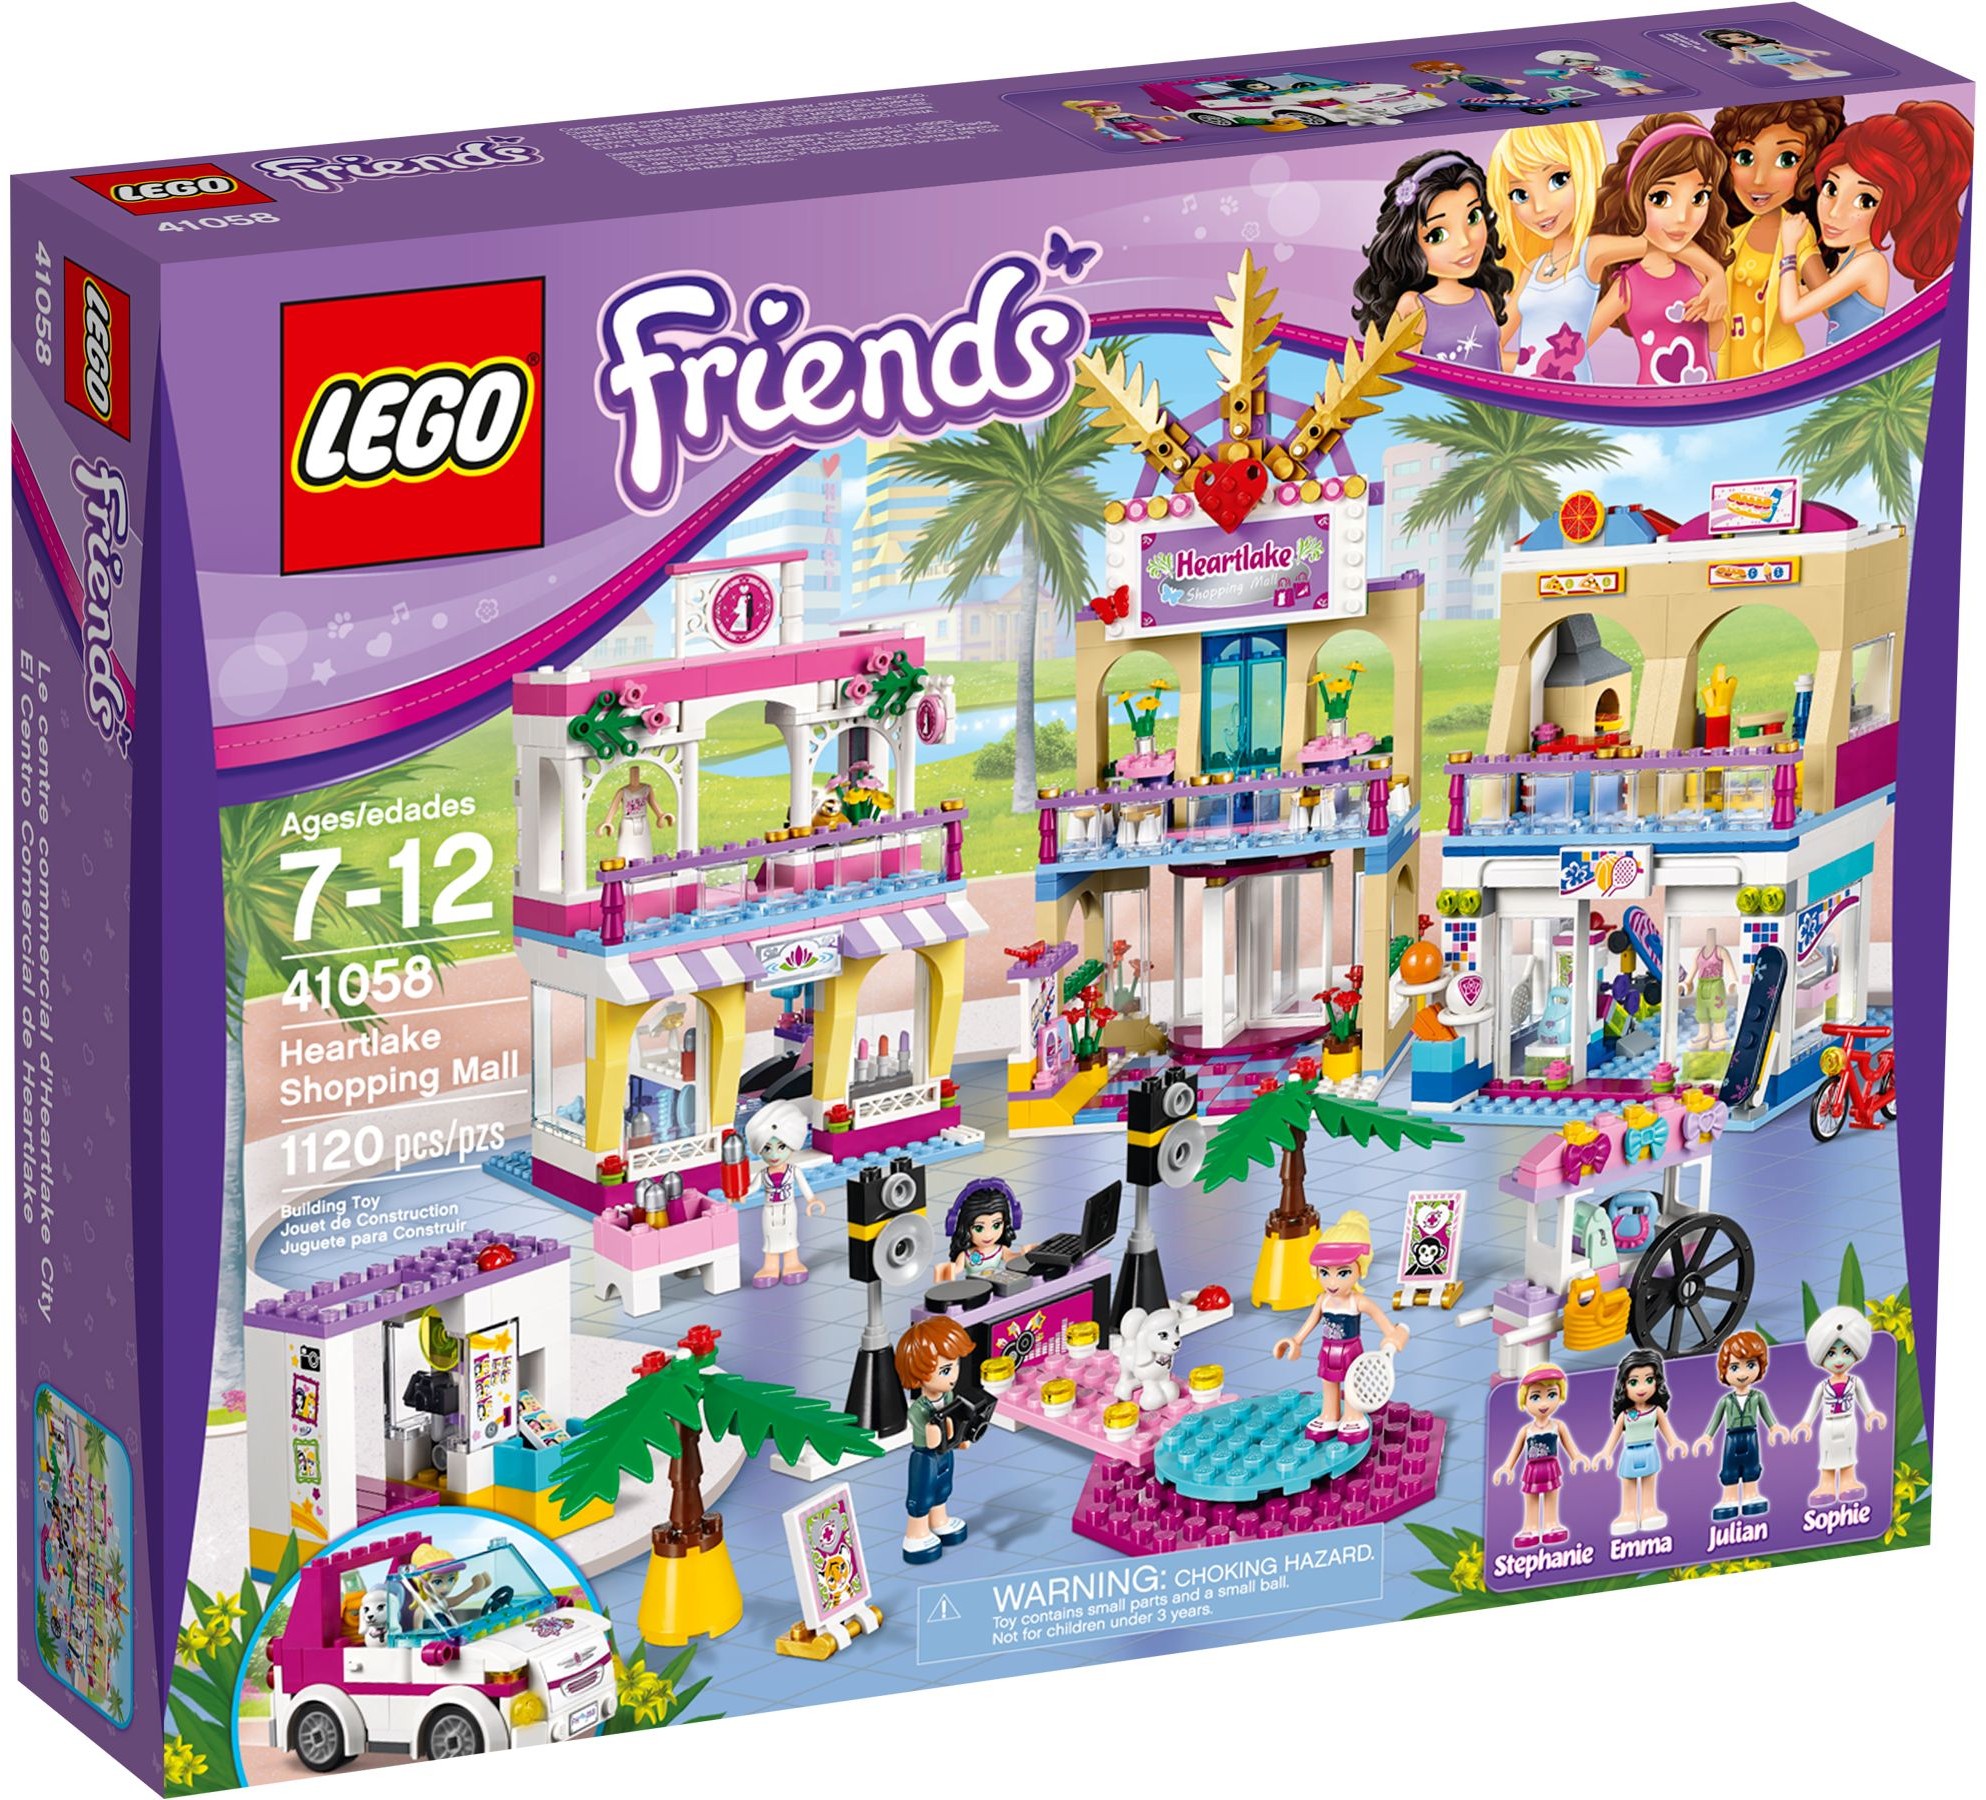 Heartlake Shopping Mall (41058) | LEGO Wiki | Fandom